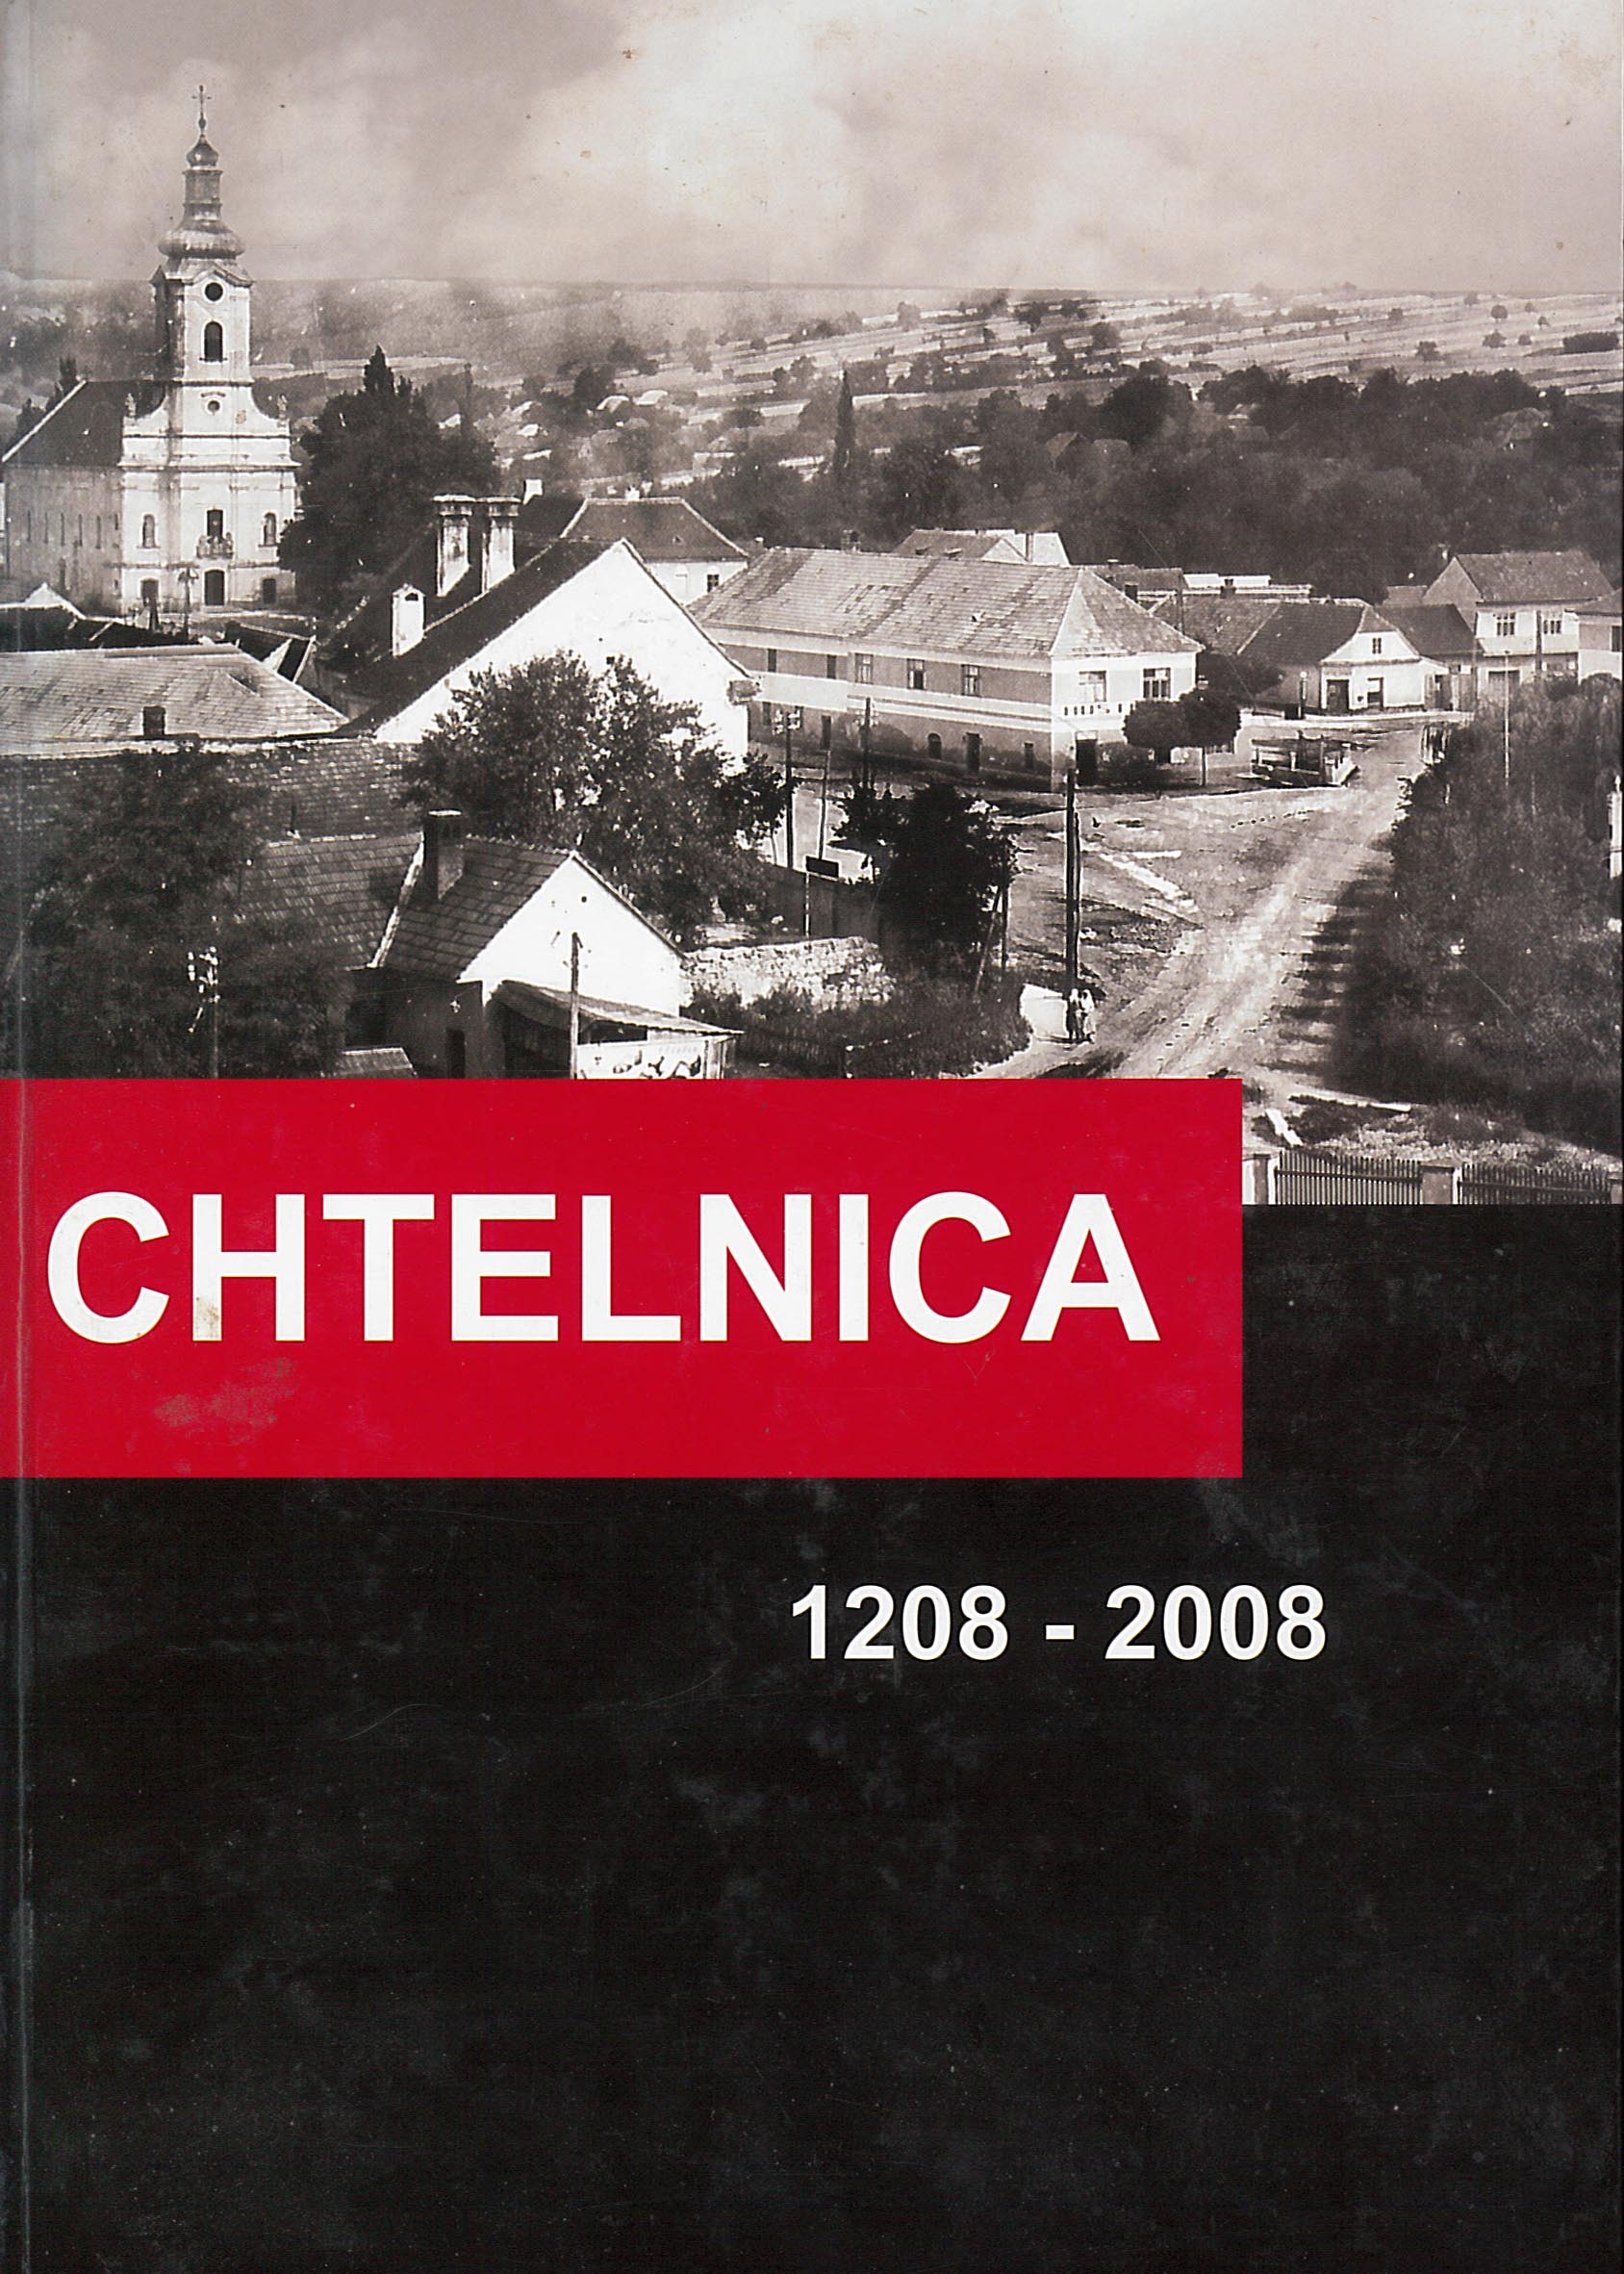 Chtelnica 1208 – 2008